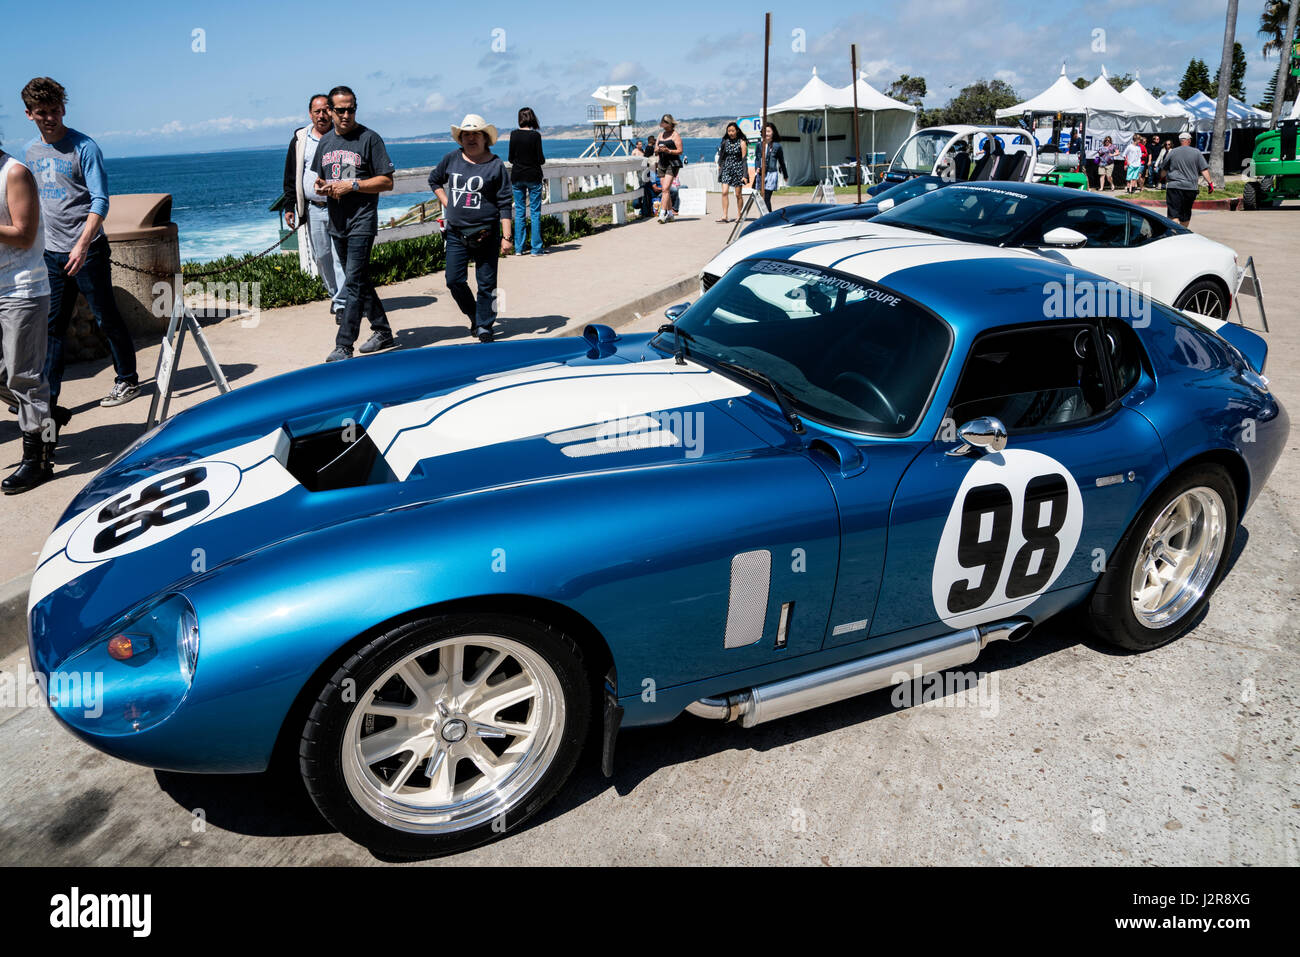 Shelby Daytona coupé au La Jolla Concourse d'élégance car show Banque D'Images